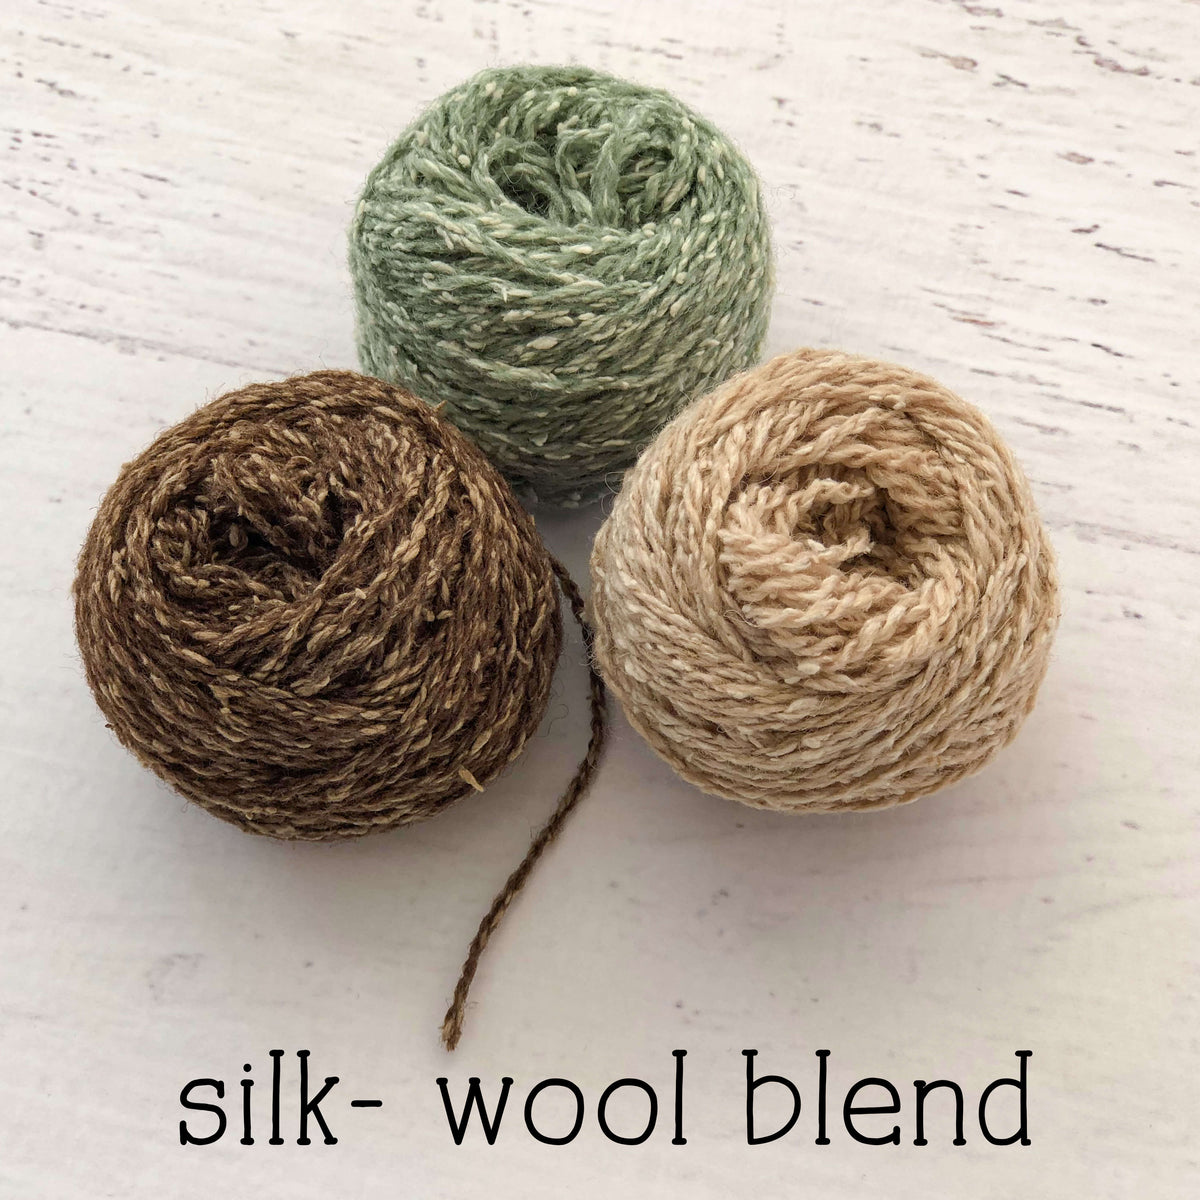 Wood Loom Weaving Kit - Wool Yarn in Natural Colors